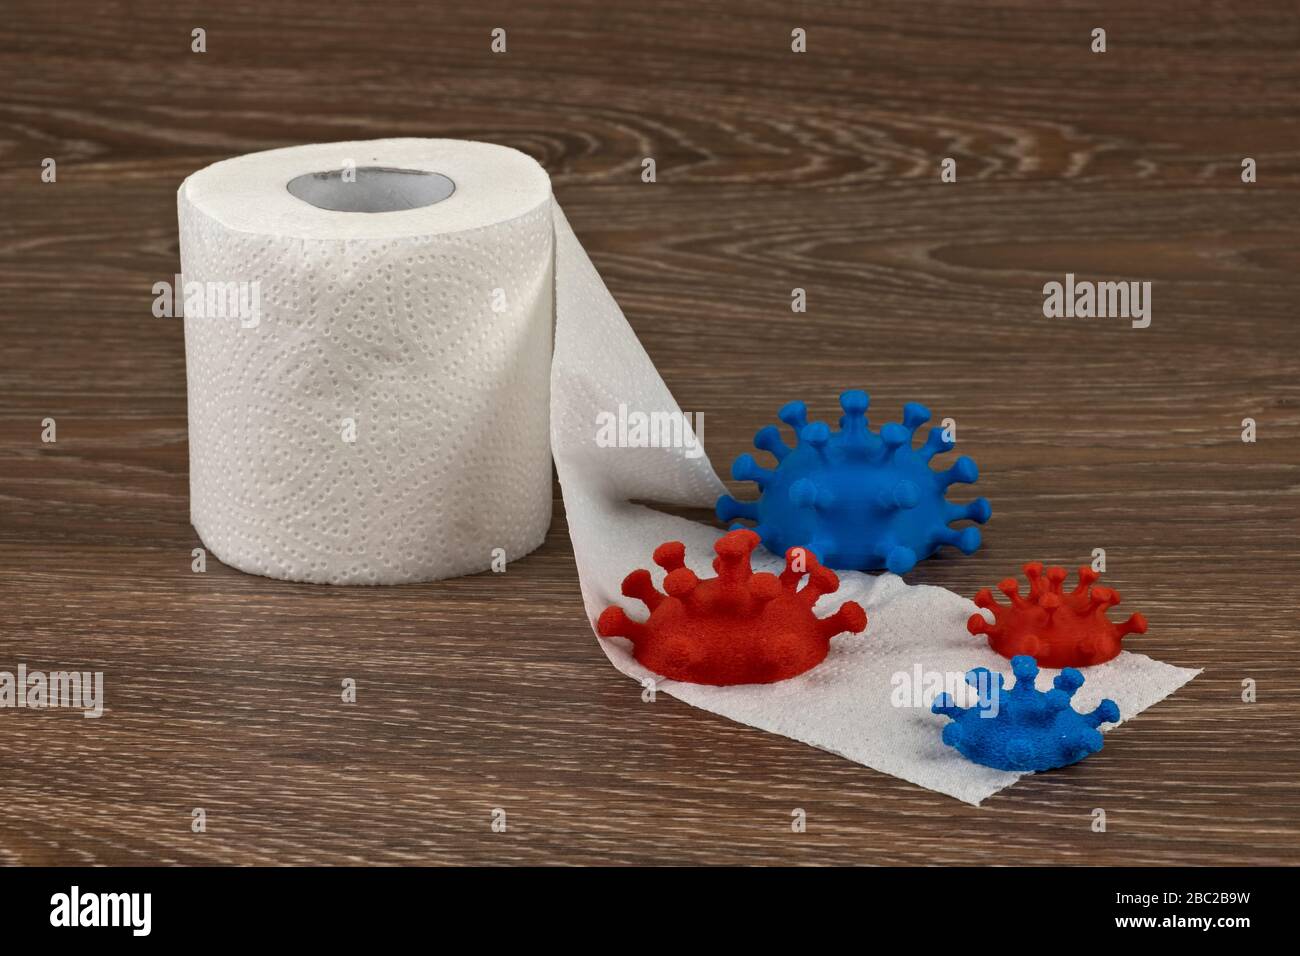 El papel higiénico es una forma más sencilla de tocar algo sin contacto directo con una superficie probablemente contaminada. Foto de stock